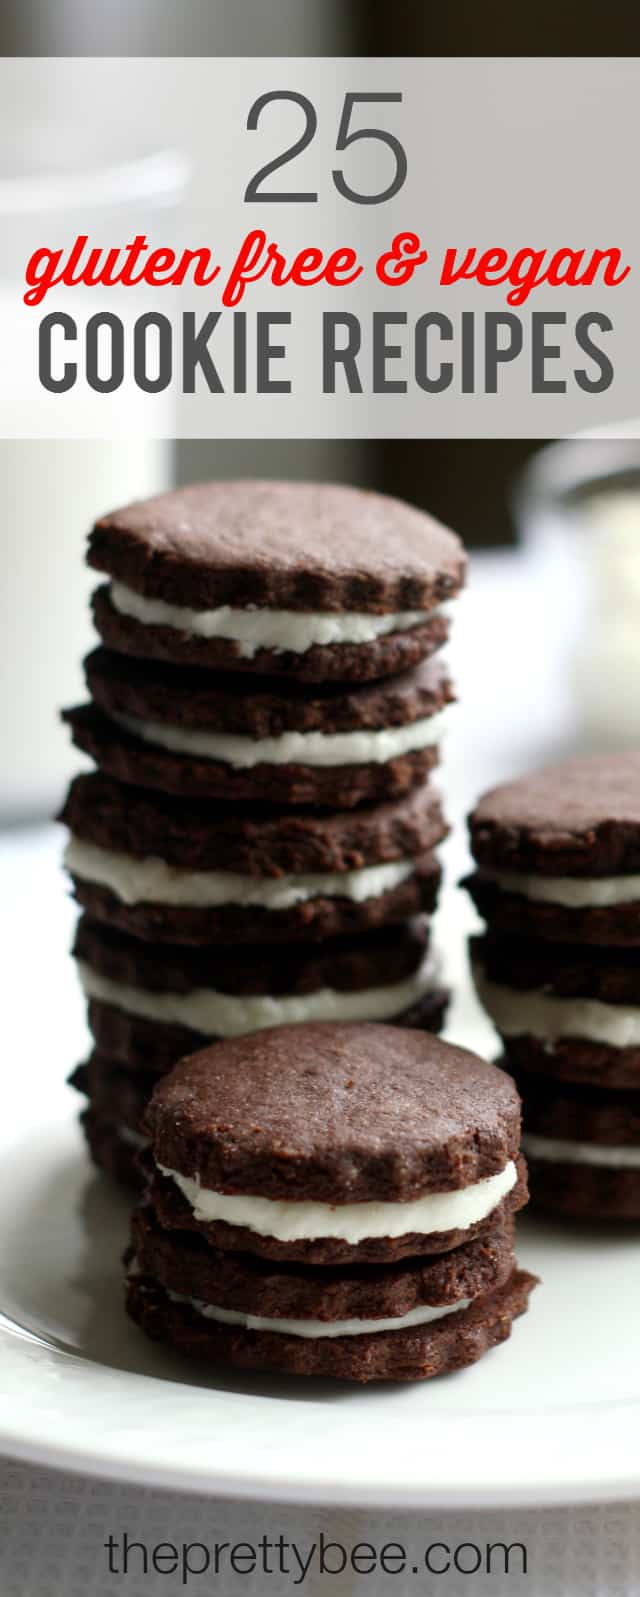 25 lahodné bezlepkové a veganské recepty cookie pro každou příležitost! # vegan